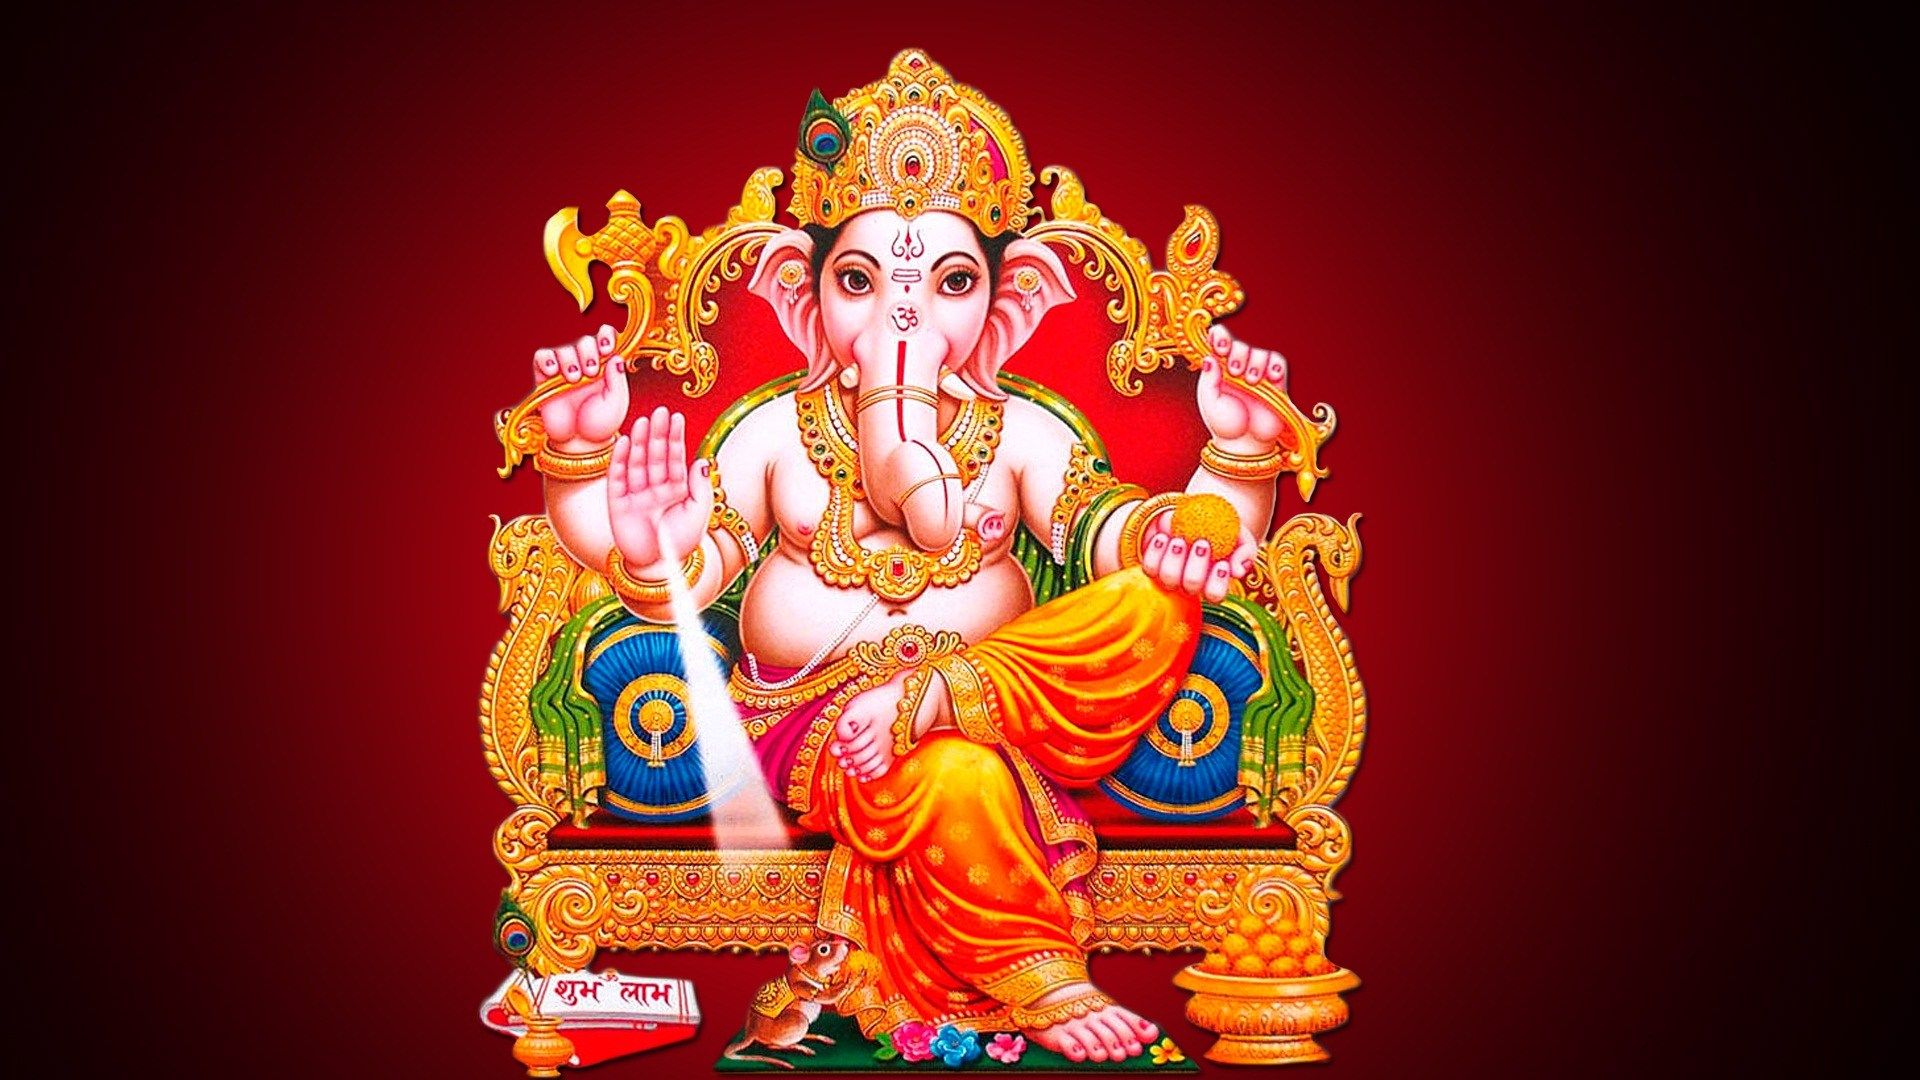 Ganesha image, Lord ganehsha wallpaper, lord ganesha image